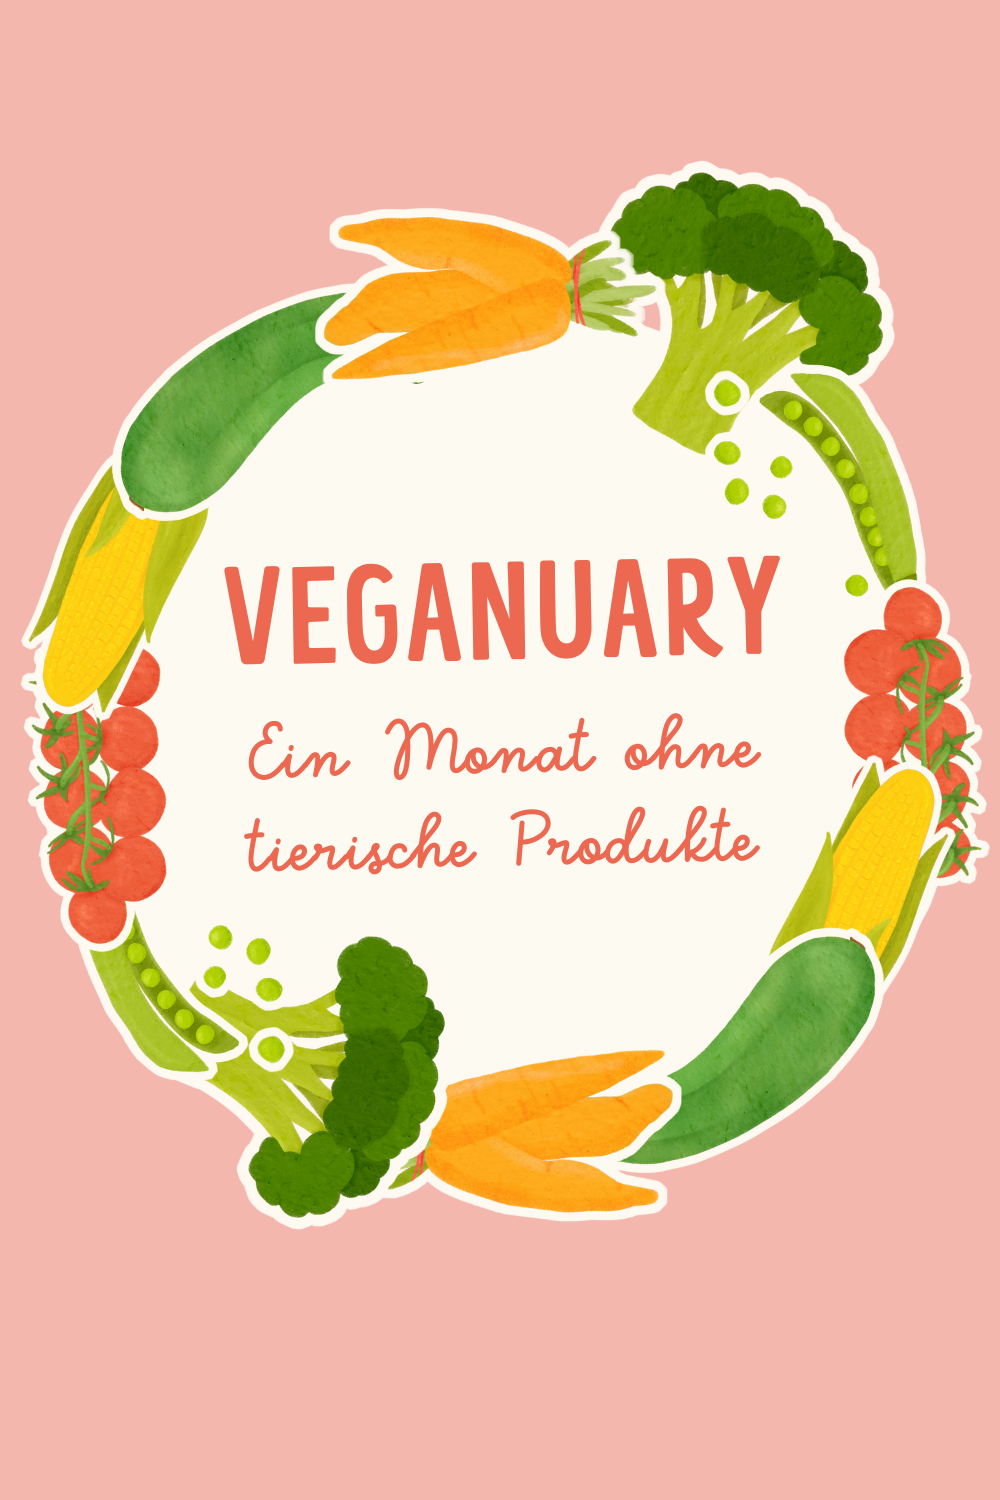 Fragen zu Veganuary